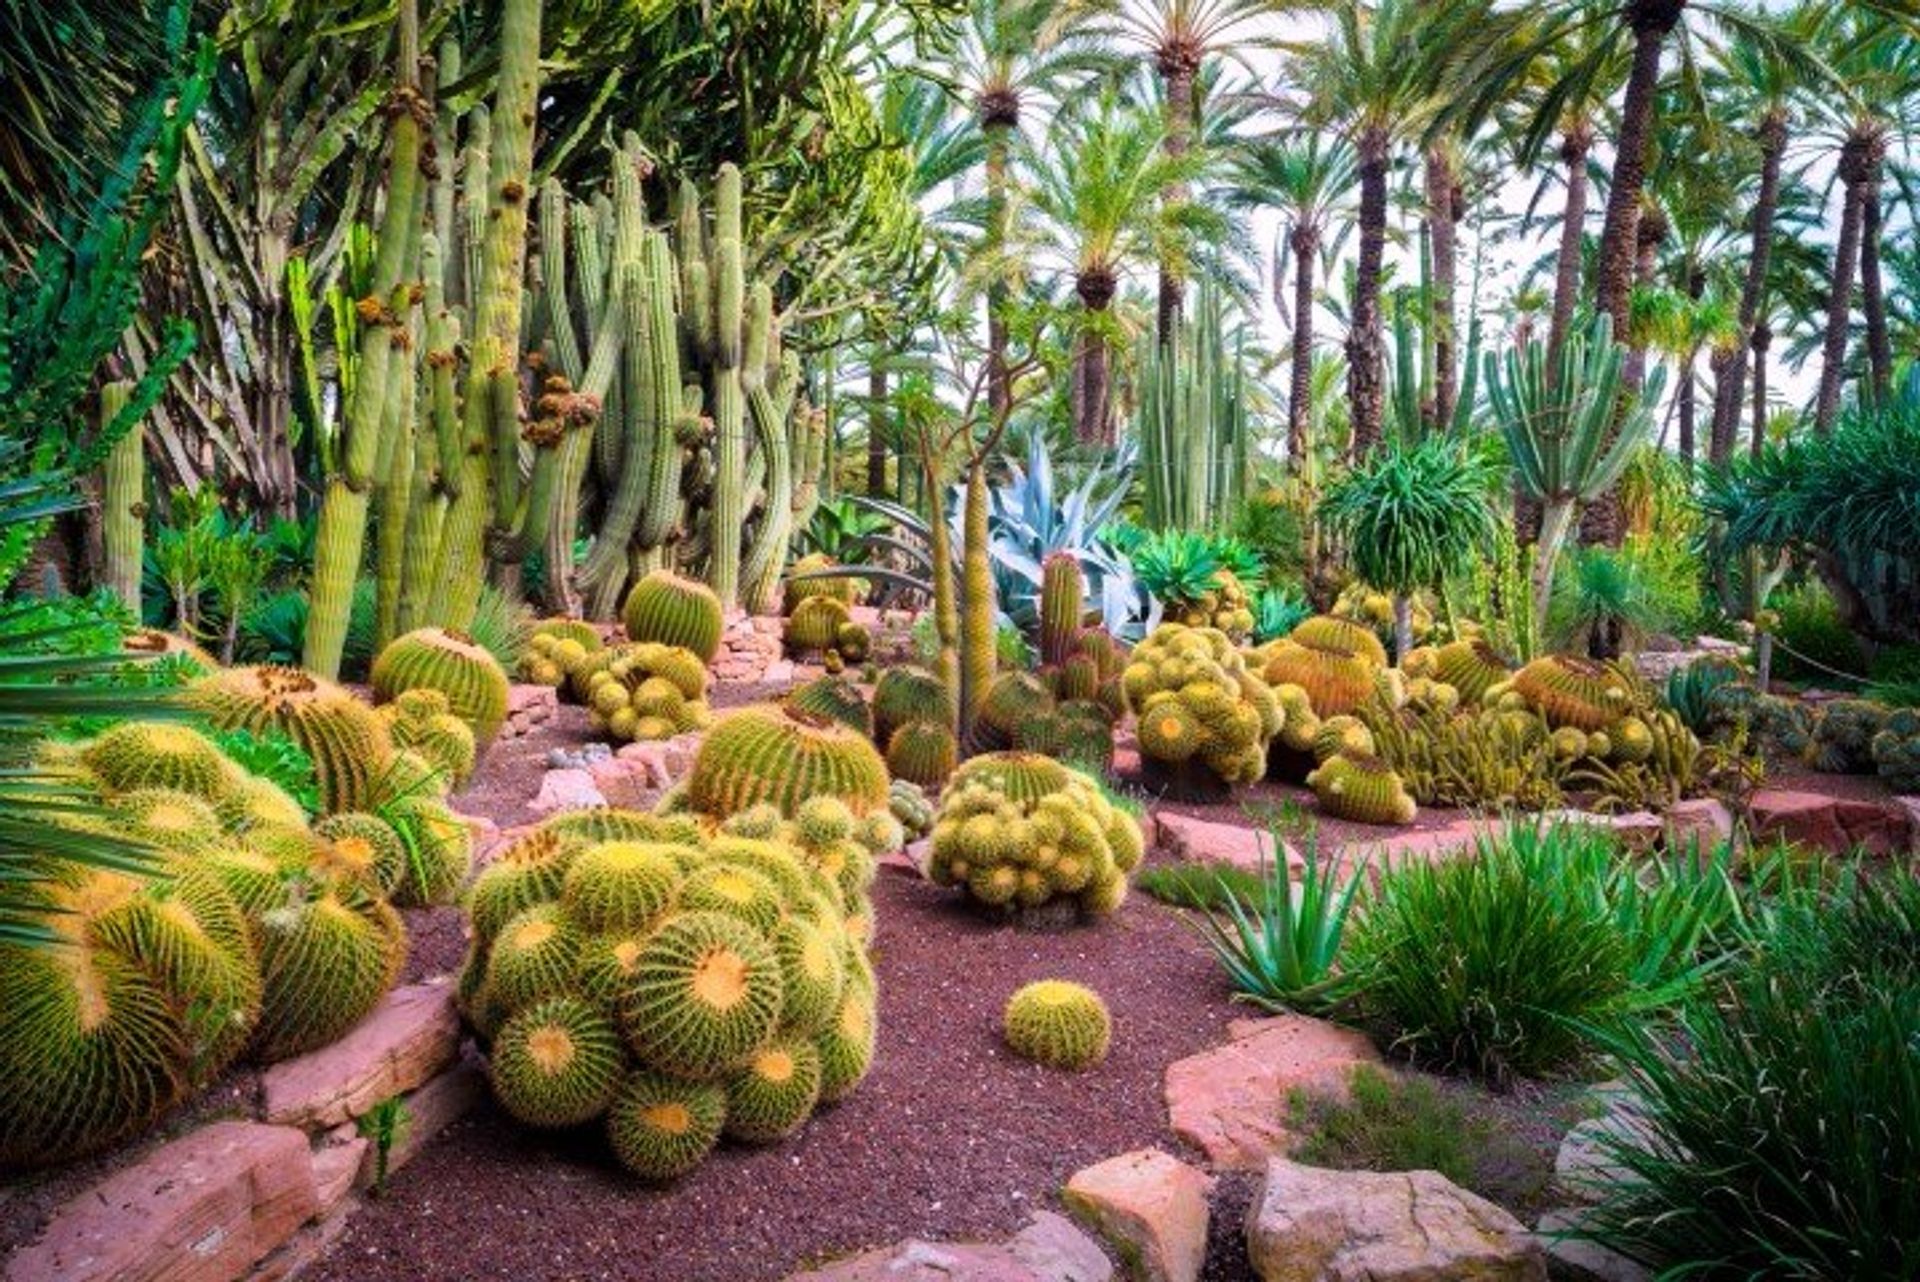 Cactus in the botanical gardens of Huerto del Cura, Elche, near Alicante. A UNESCO World Heritage site.